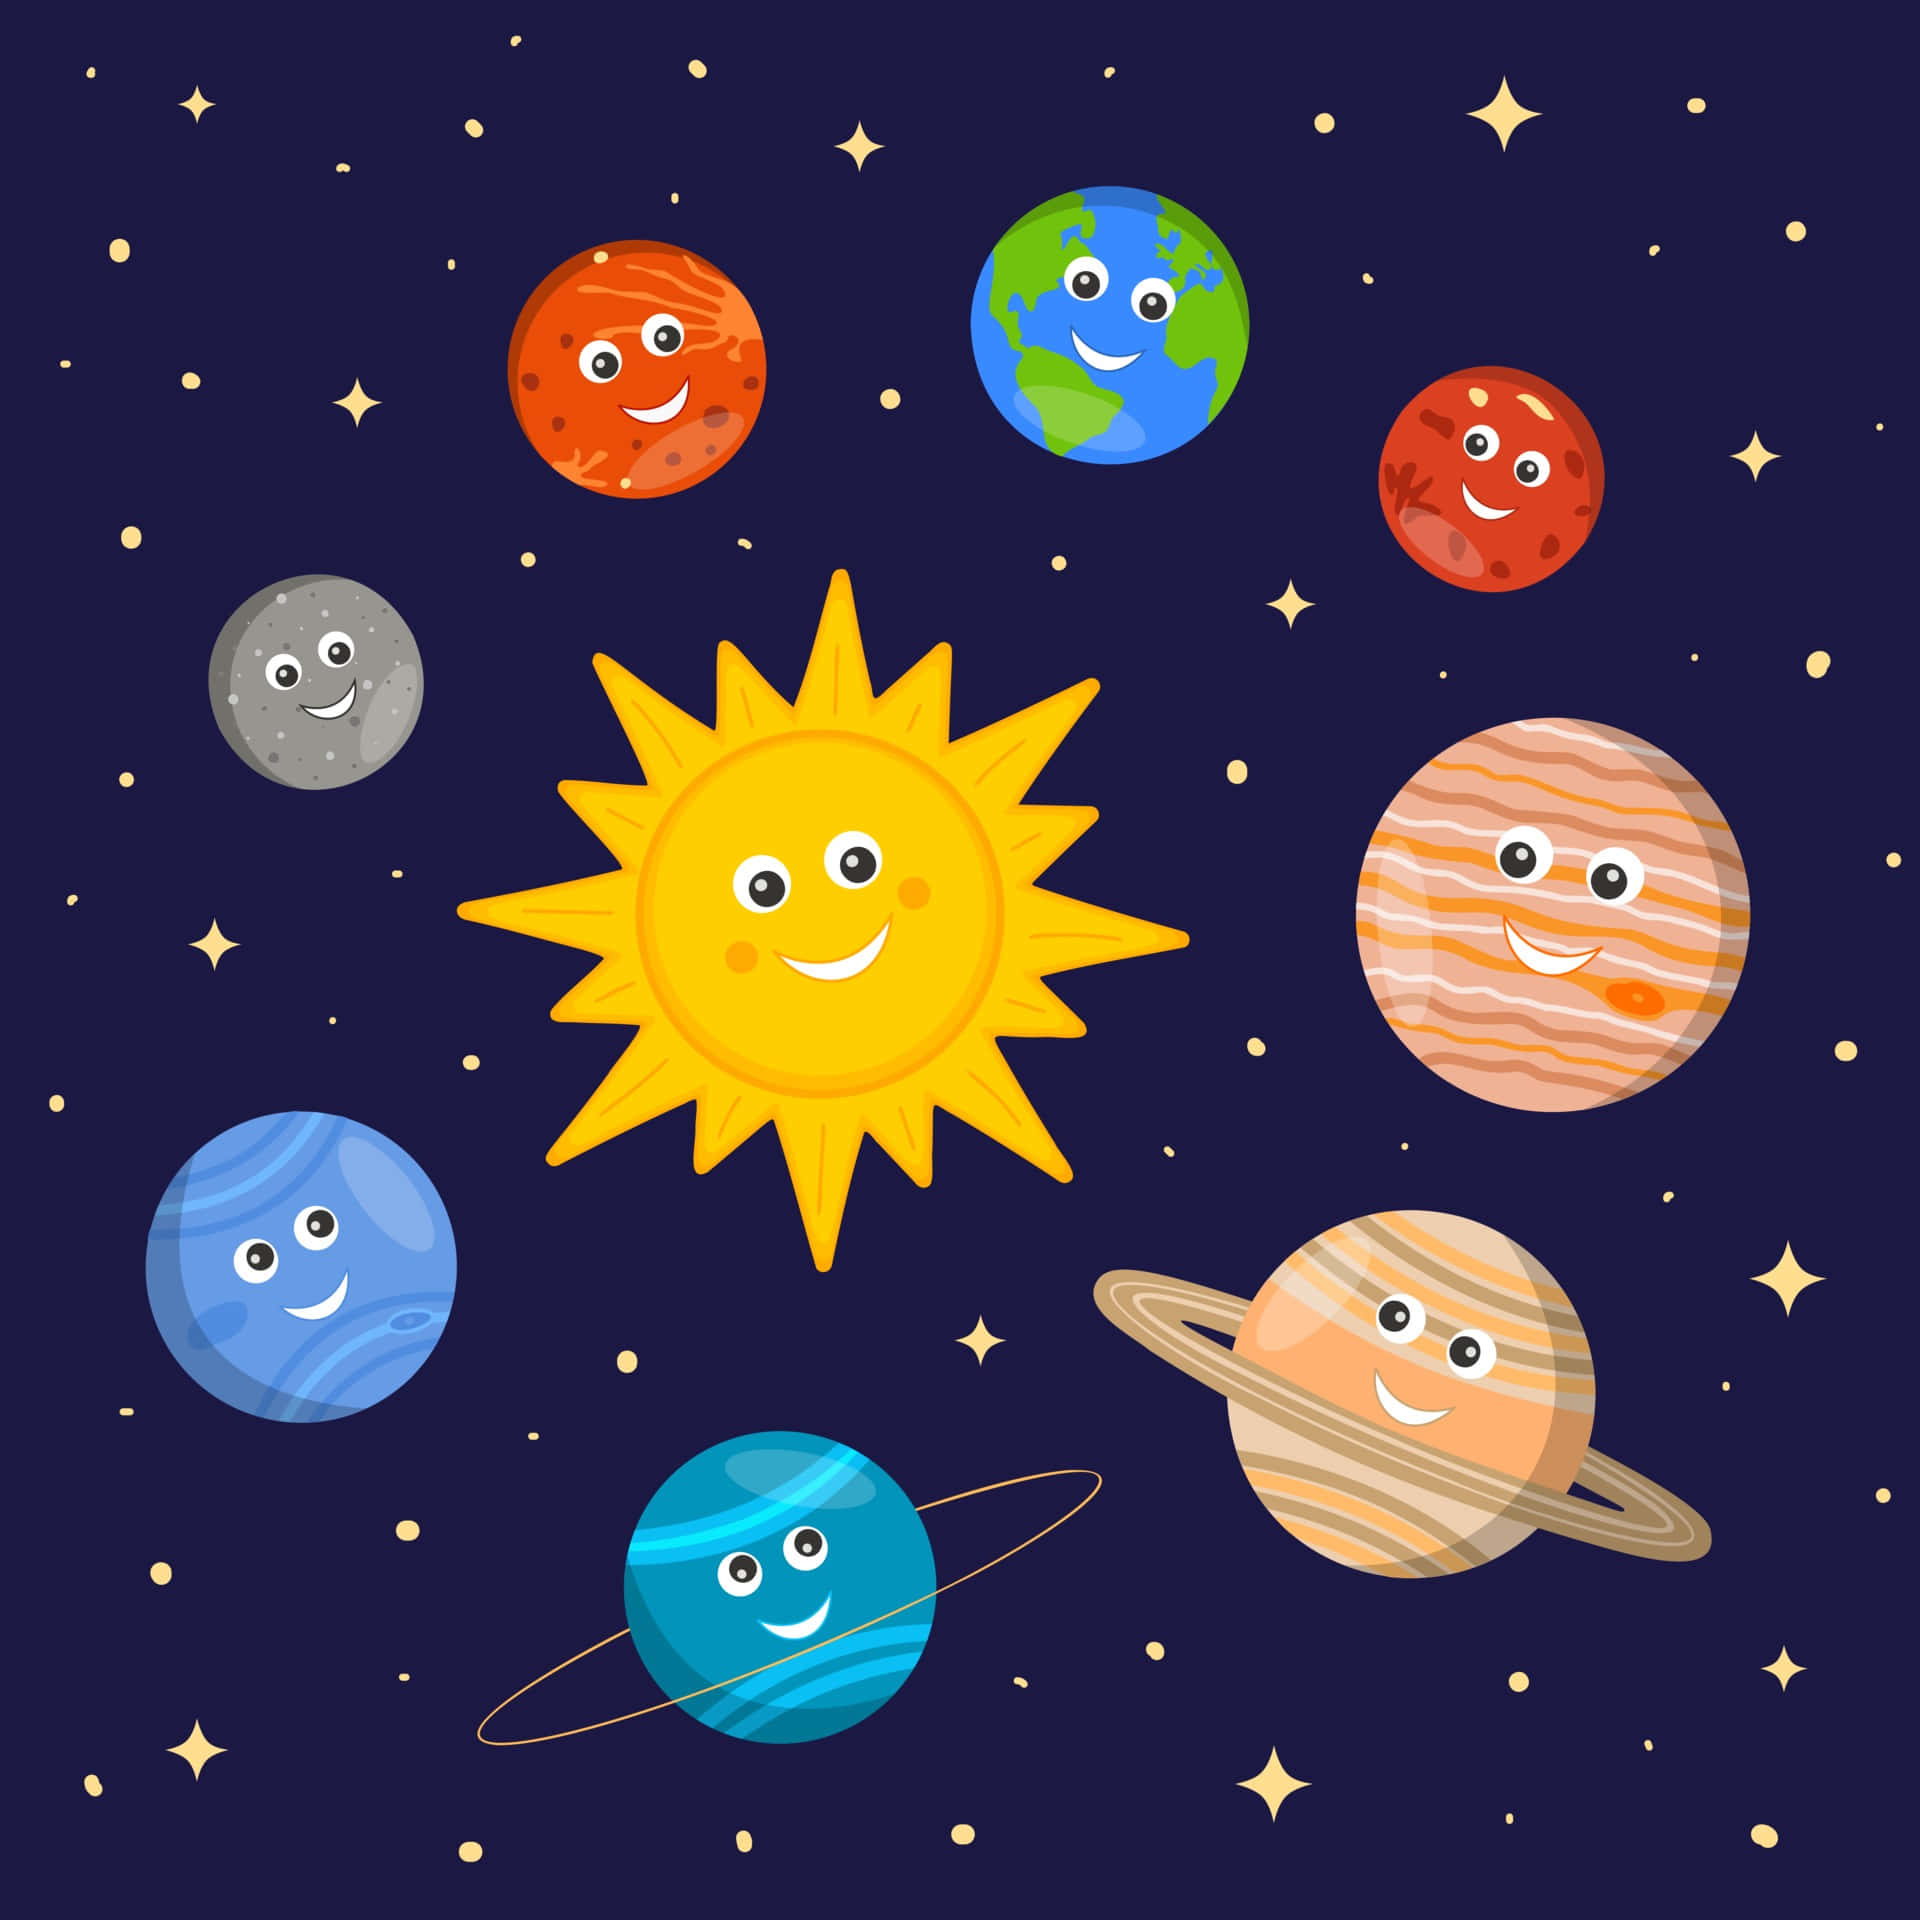 Cartoonplaneten Und Sonne Auf Einem Bild Des Sonnensystems